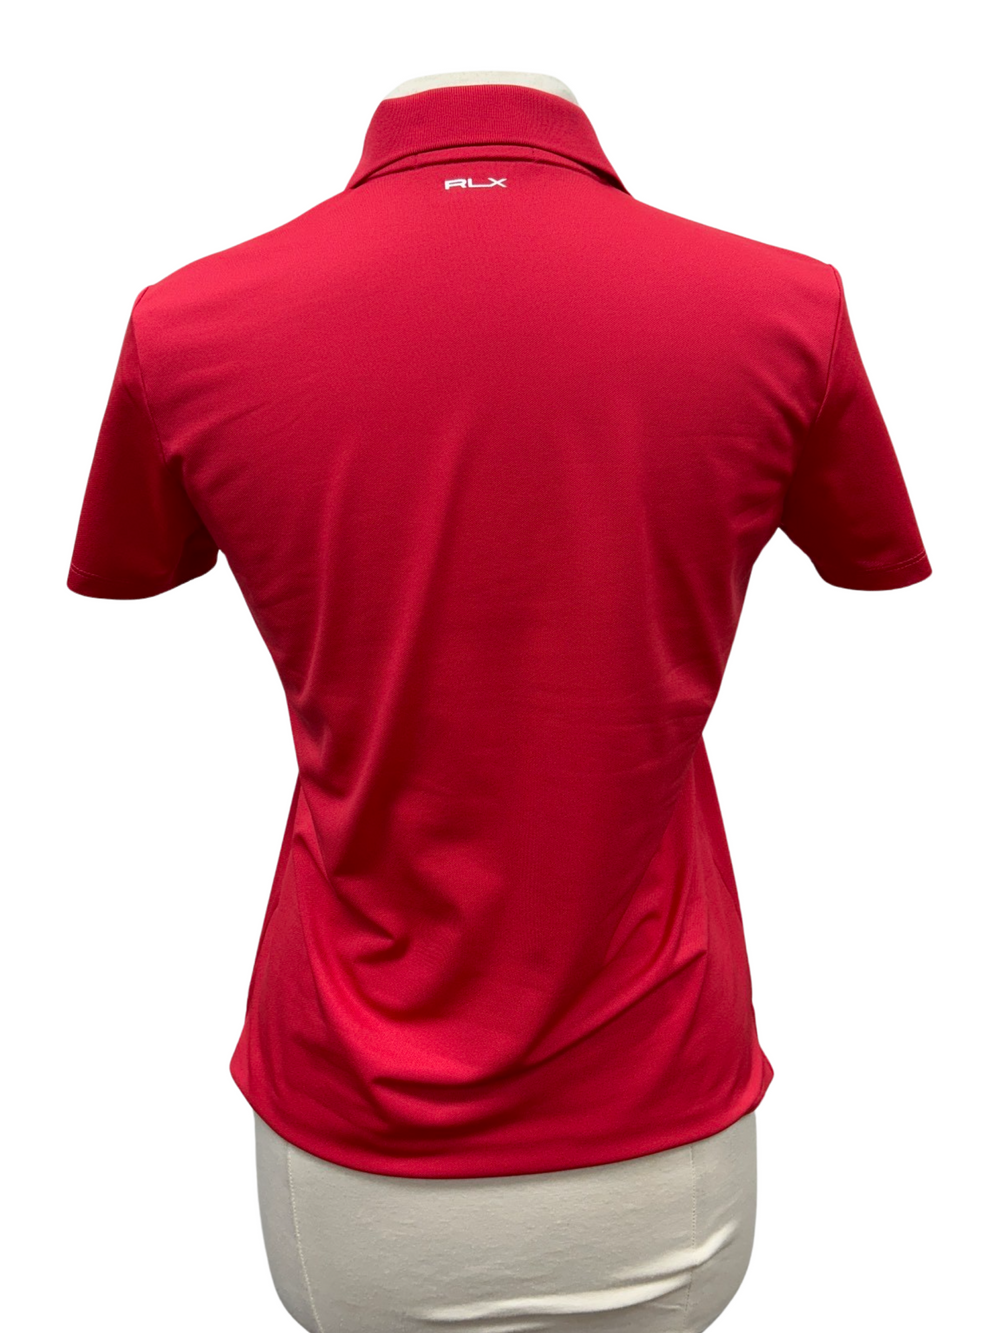 RLX Ralph Lauren Piqué Polo Shirt - Maul Red- Size Small - Skorzie